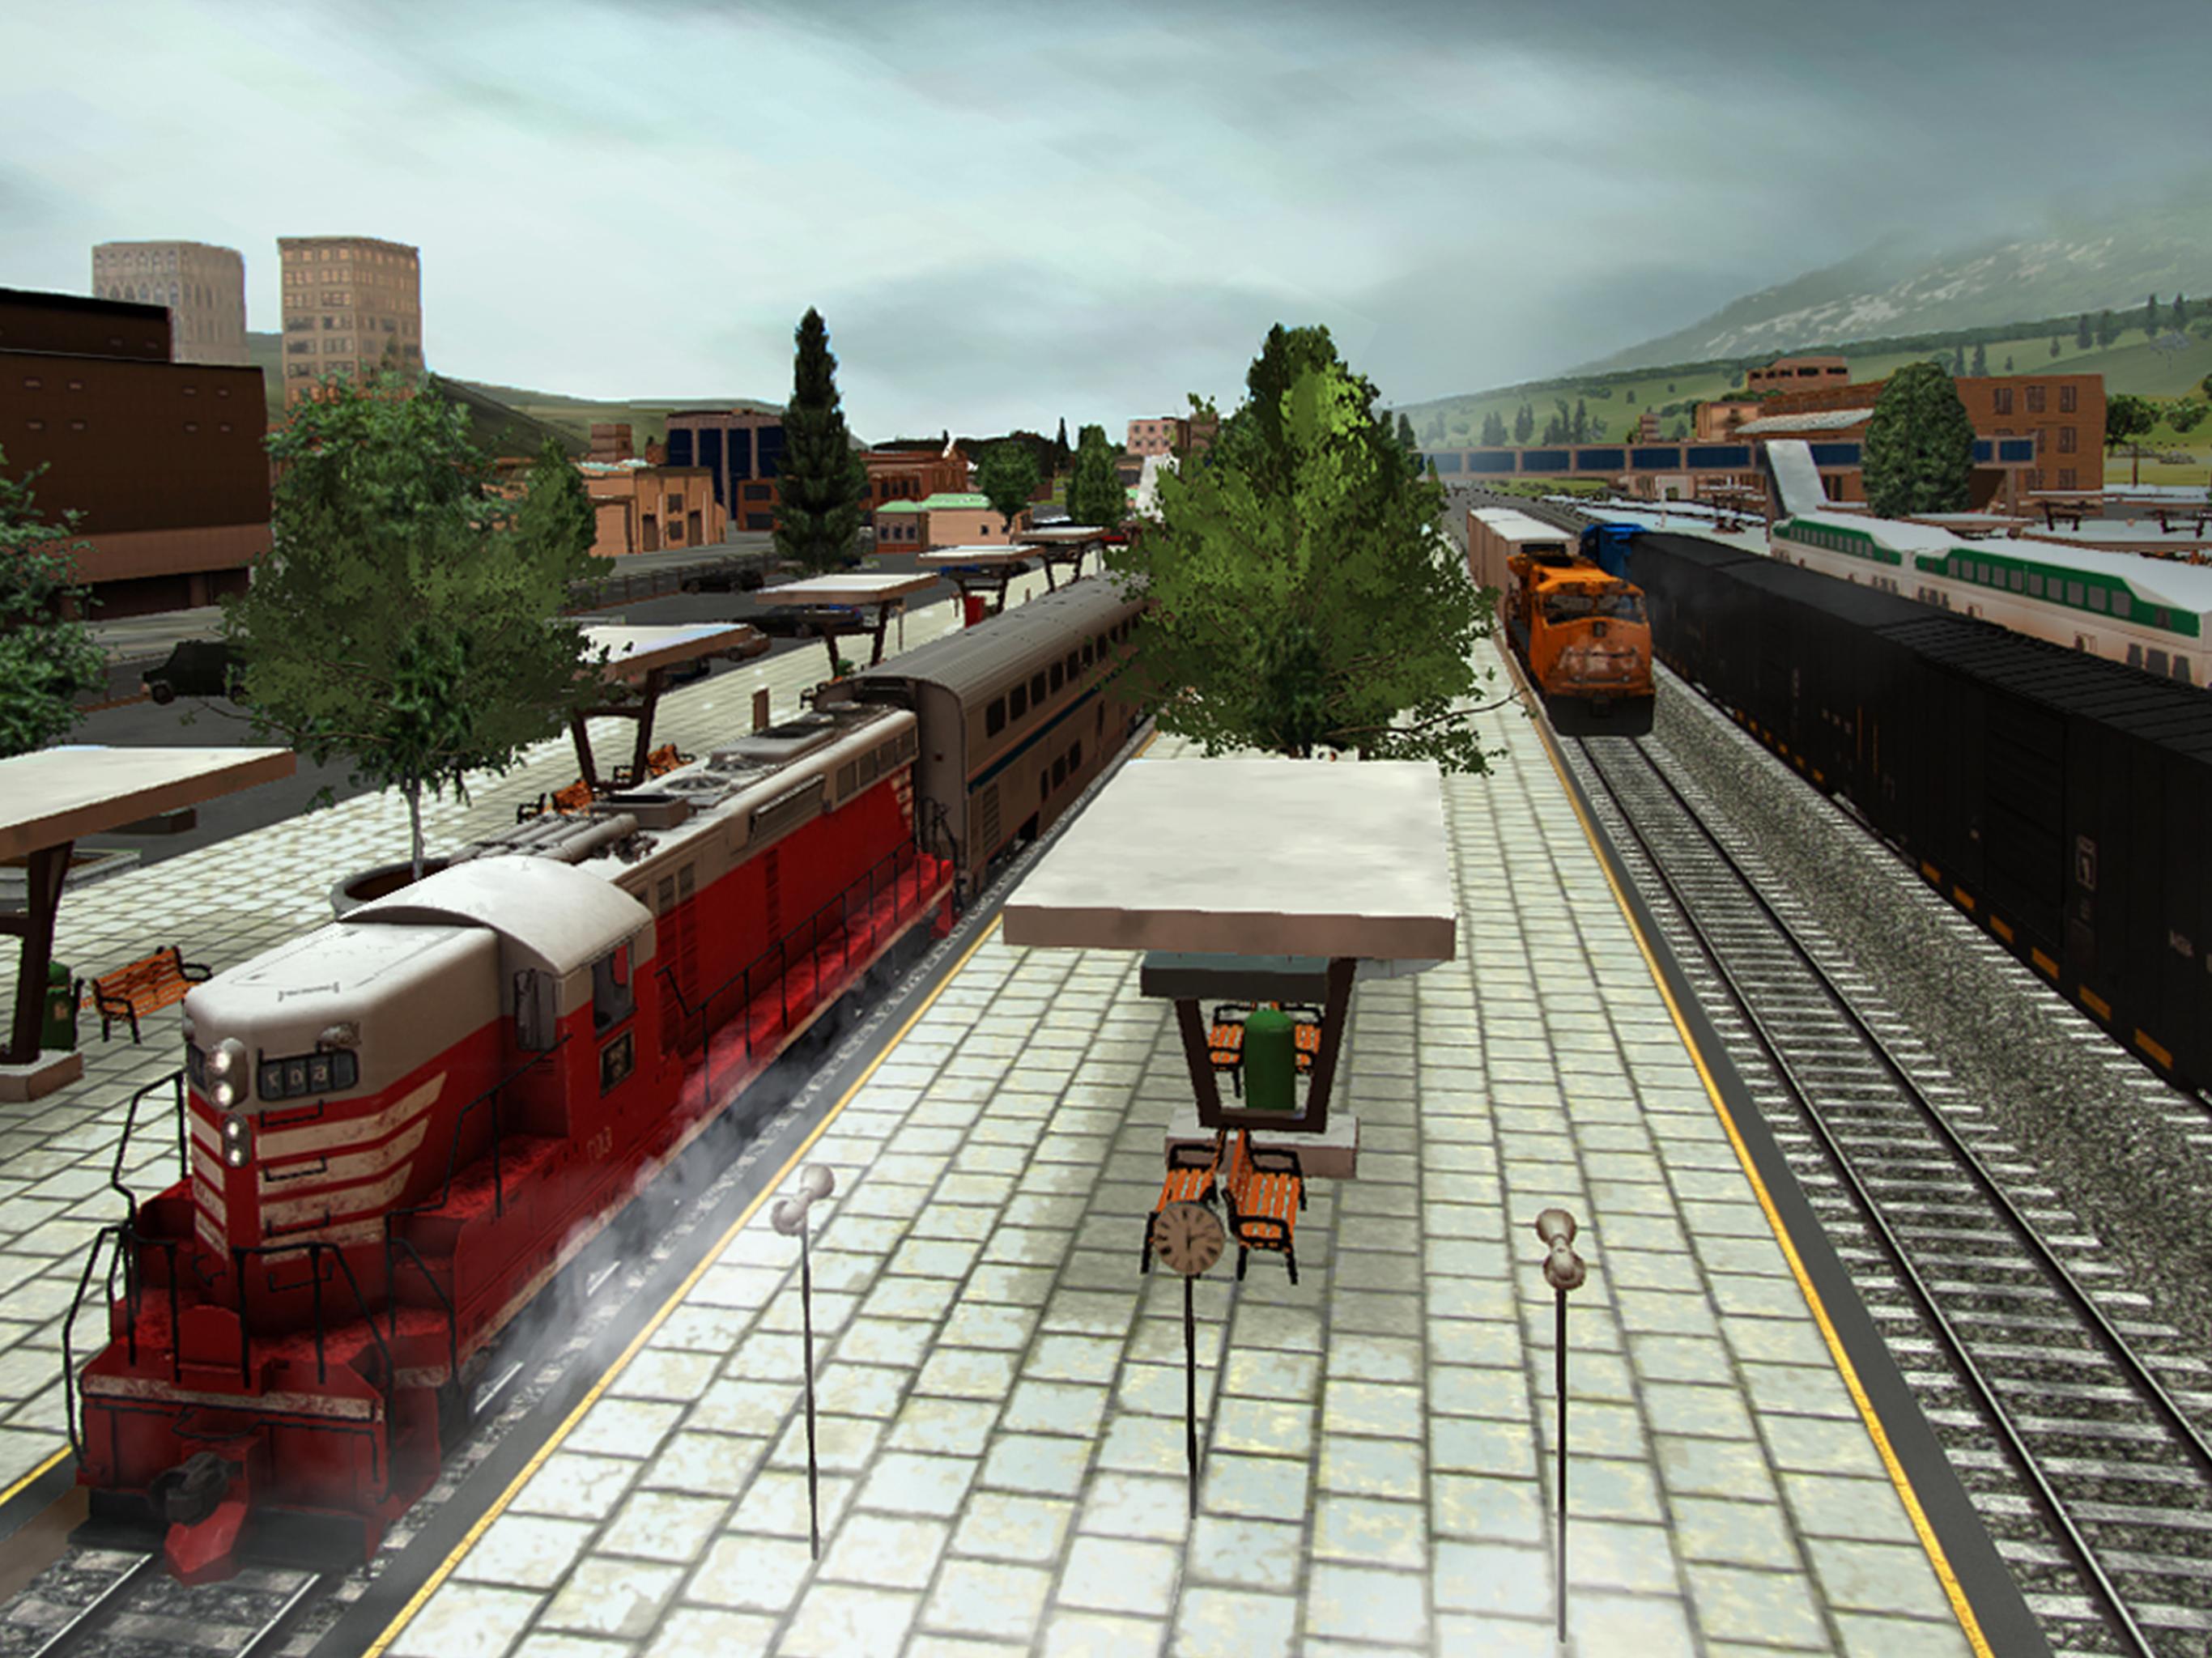 Run 8 train simulator free download for pc